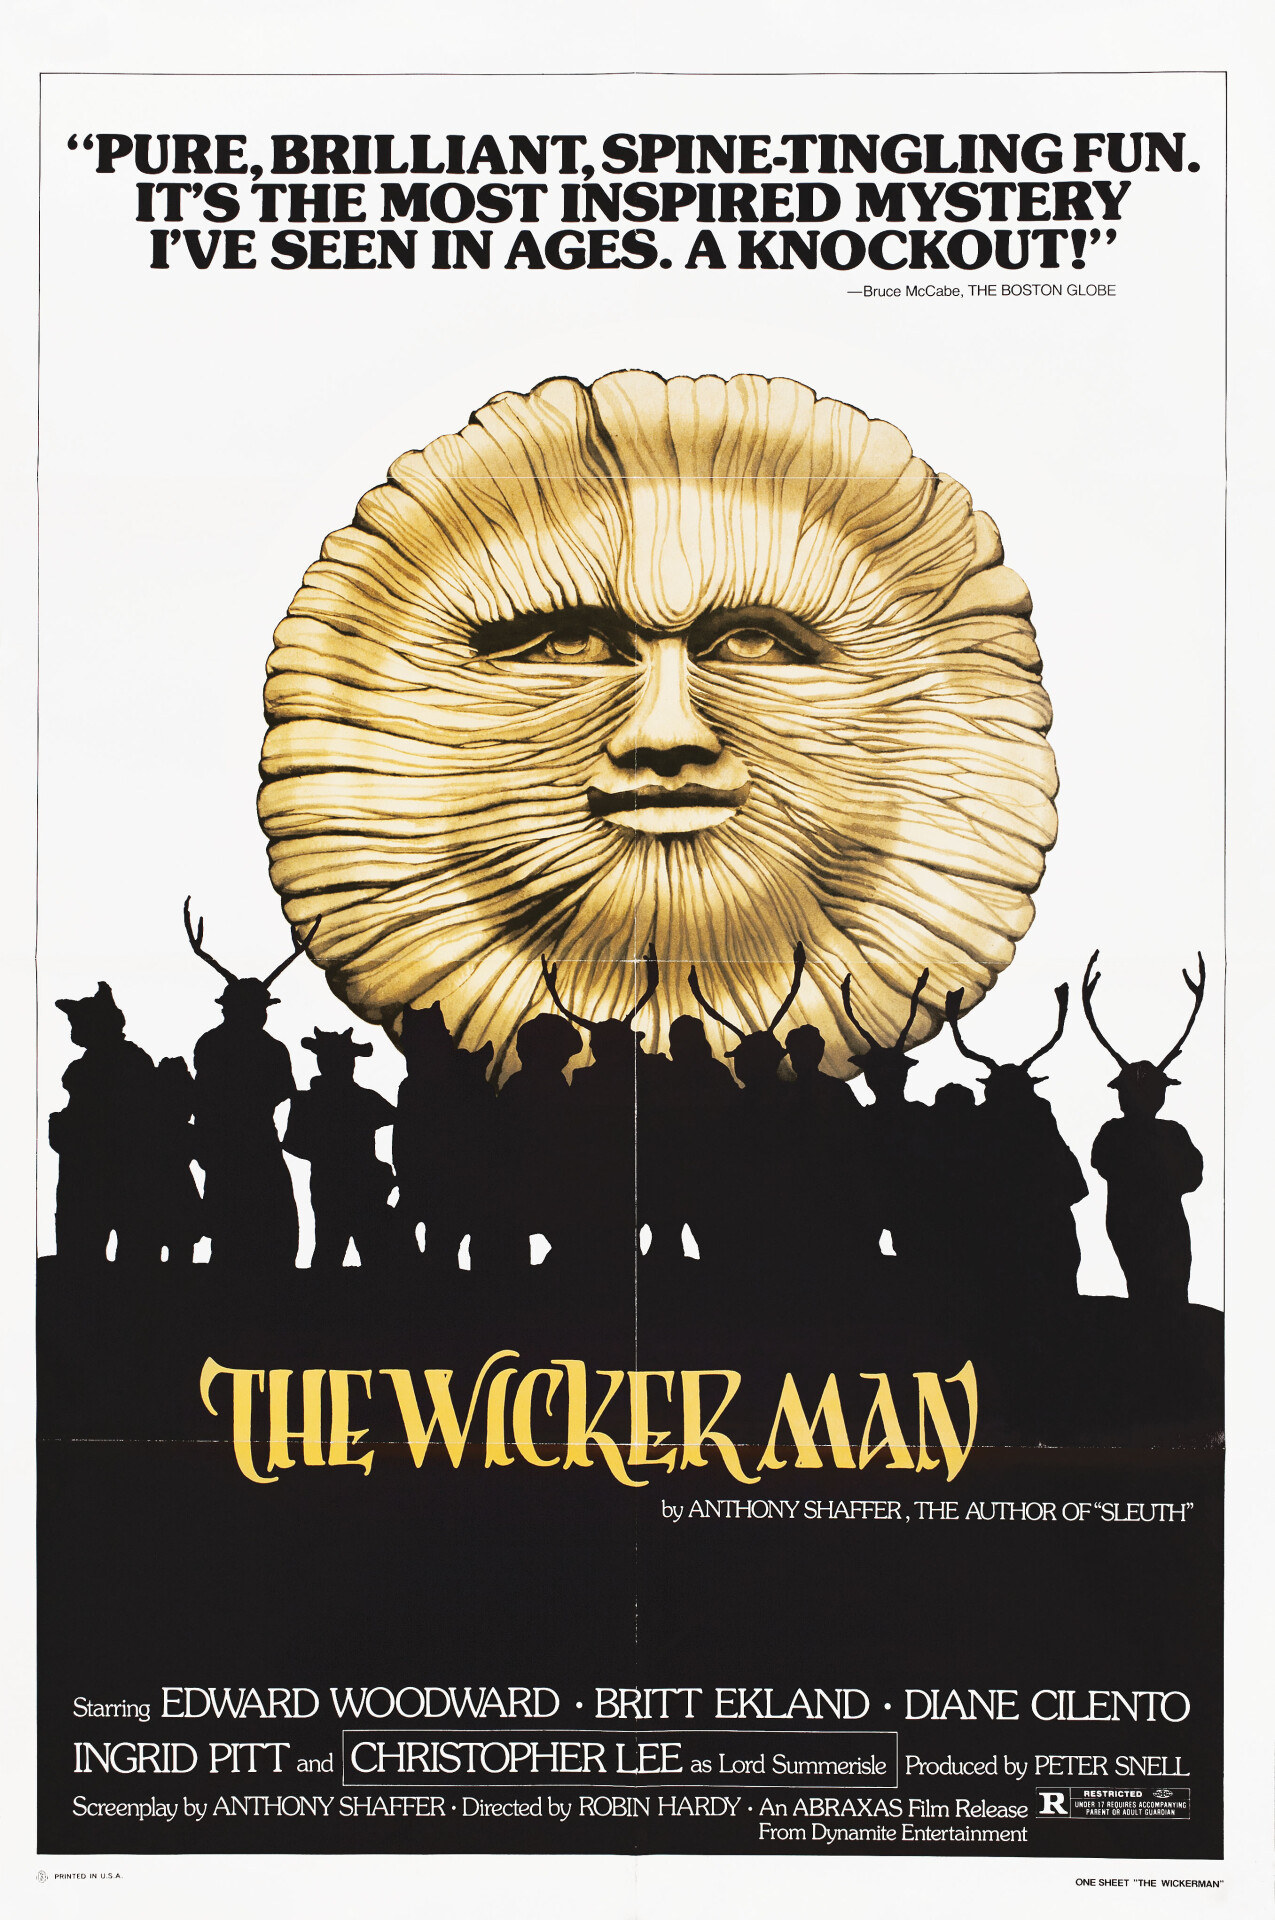 Плетеный человек (The Wicker Man, 1973), режиссёр Робин Харди, американский постер к фильму (ужасы, 1970 год)